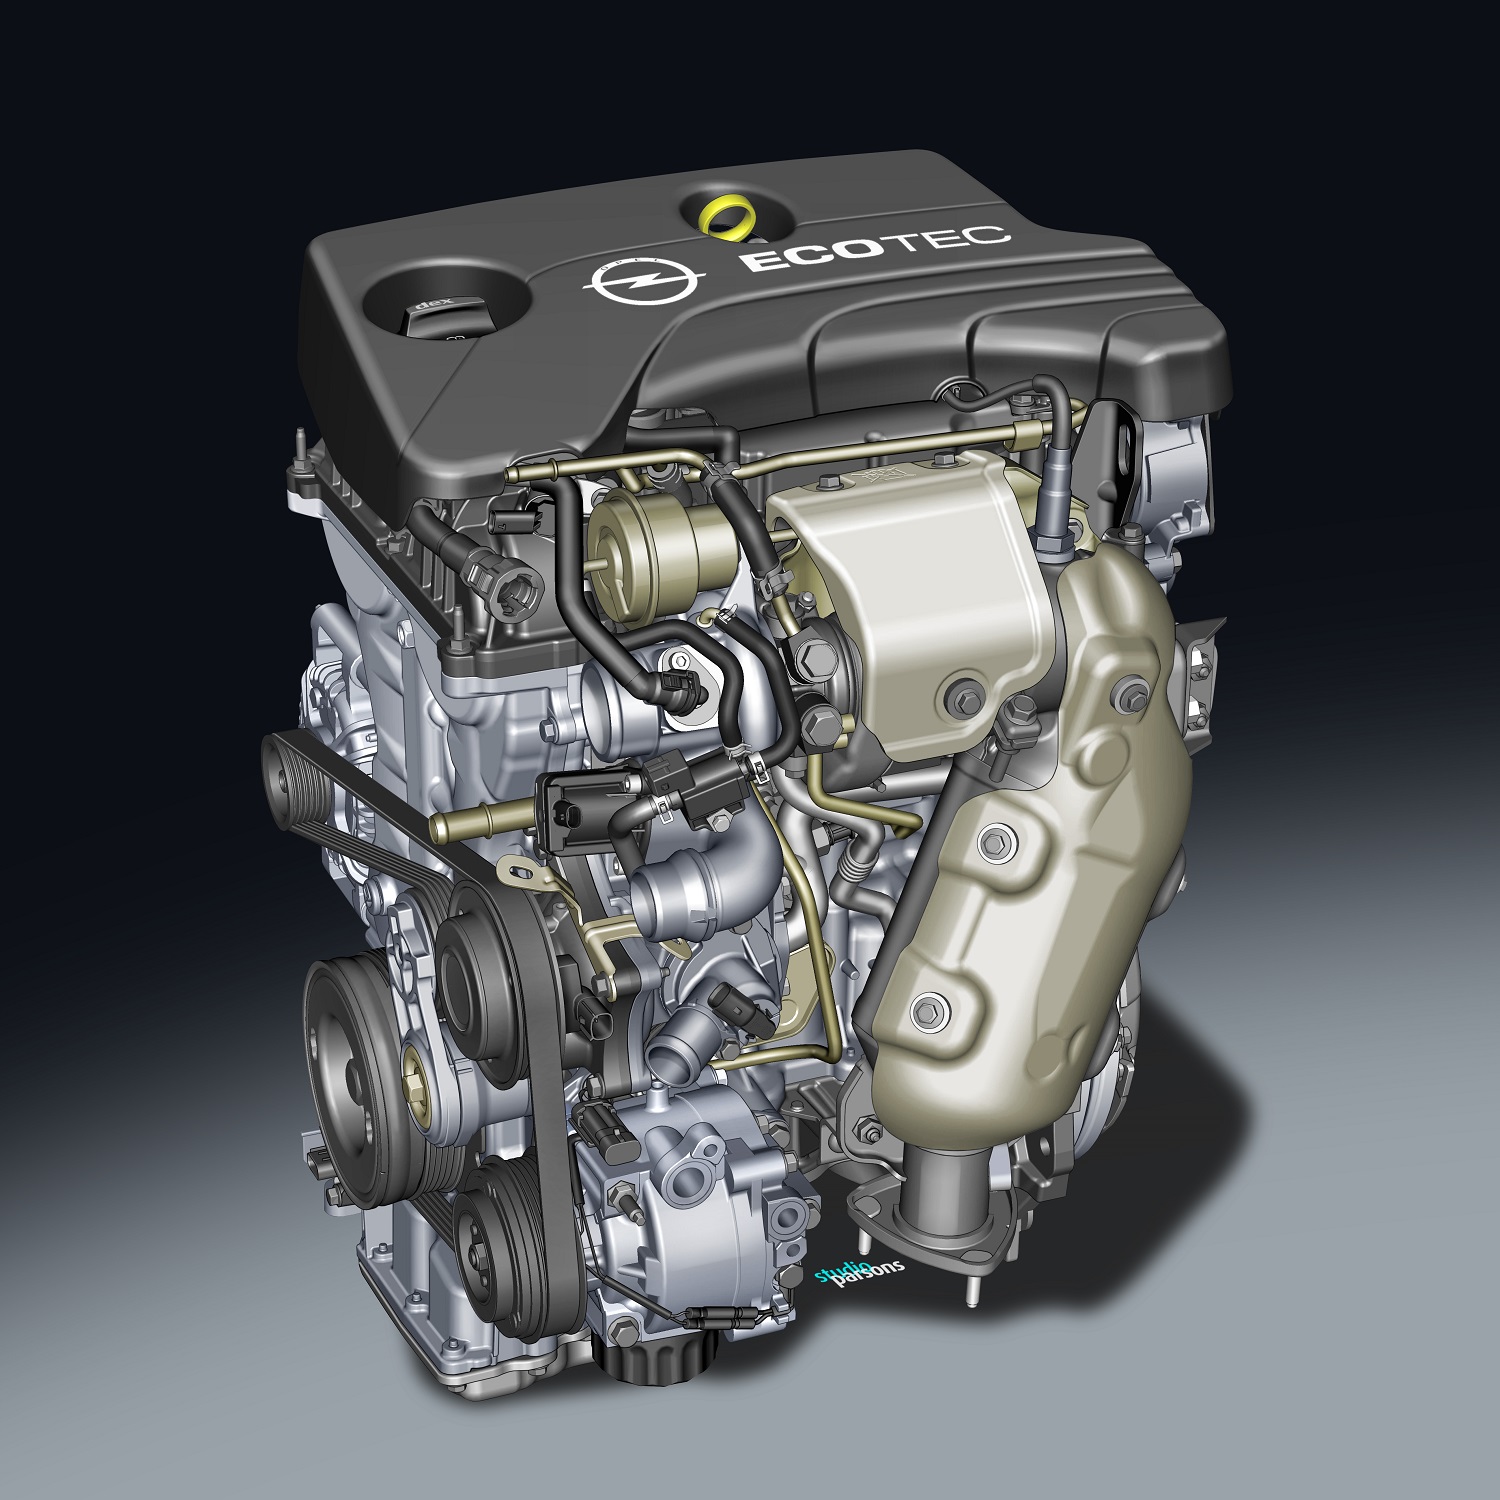 Opel 1.0l SIDI Turbo engine